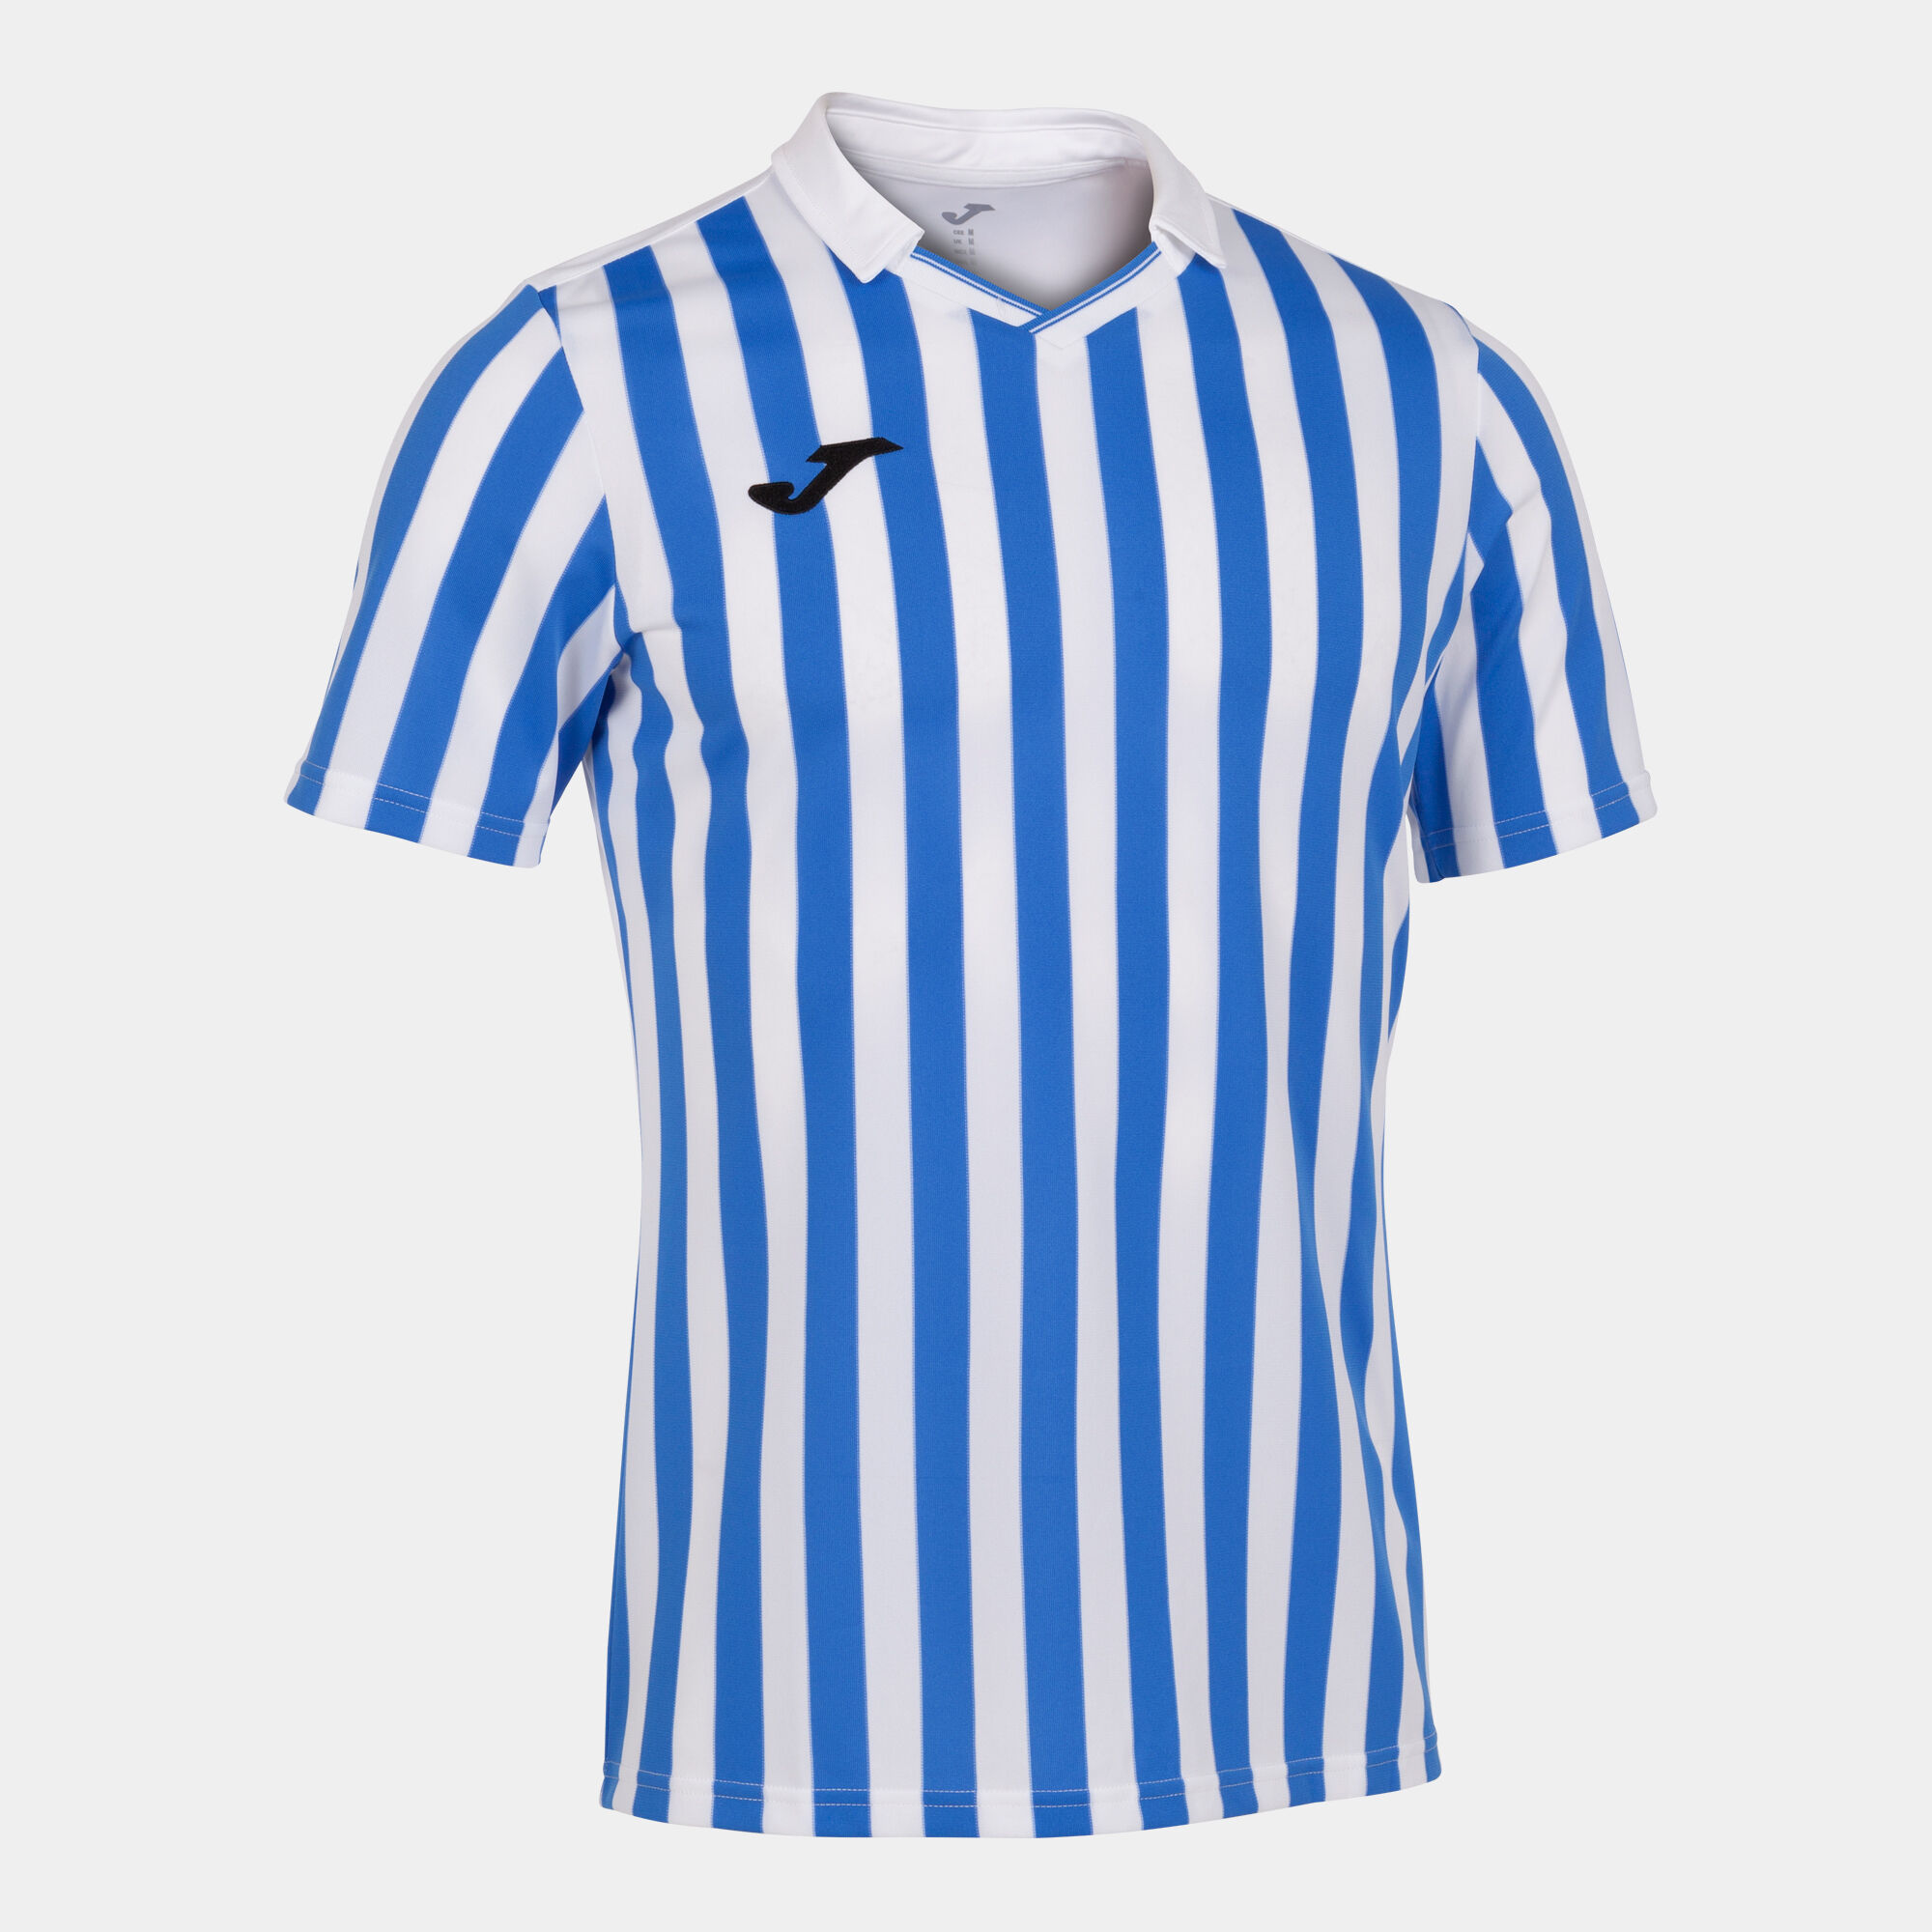 Koszulka z krótkim rękawem mężczyźni Copa II bialy niebieski royal